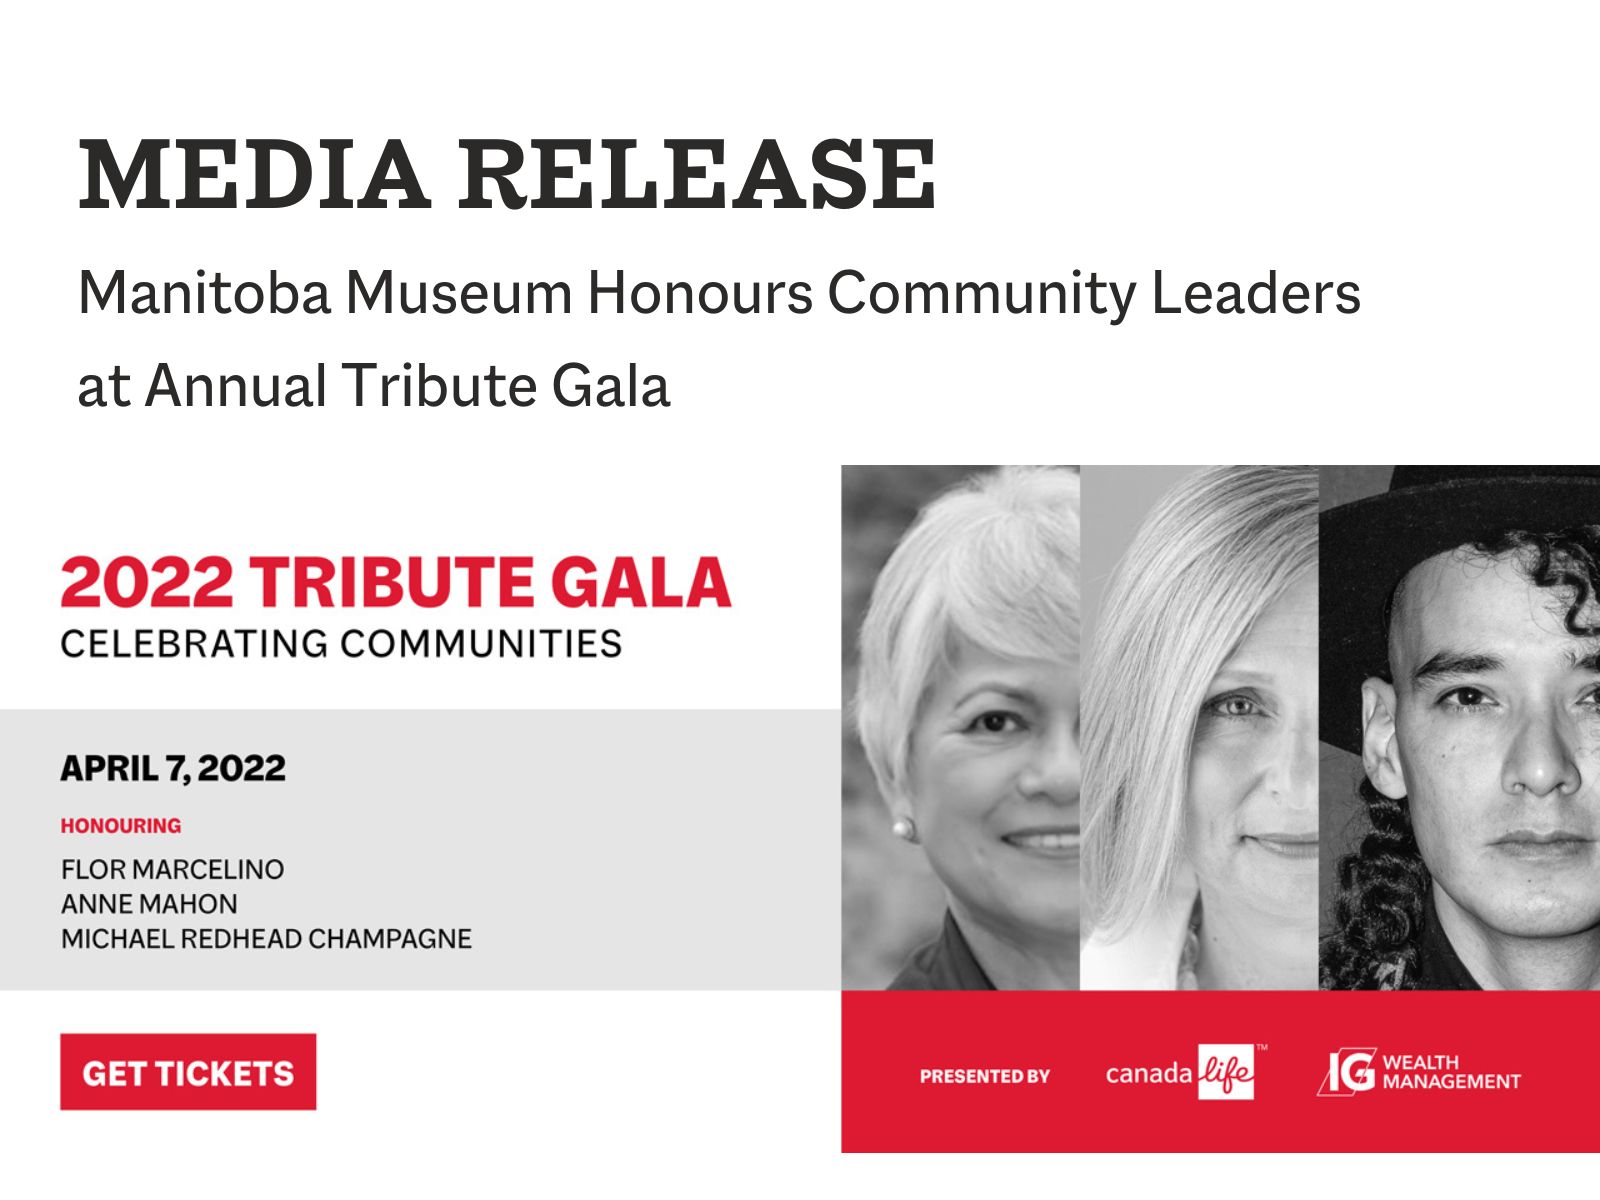 Manitoba Museum Honours Community Leaders at Annual Tribute Gala